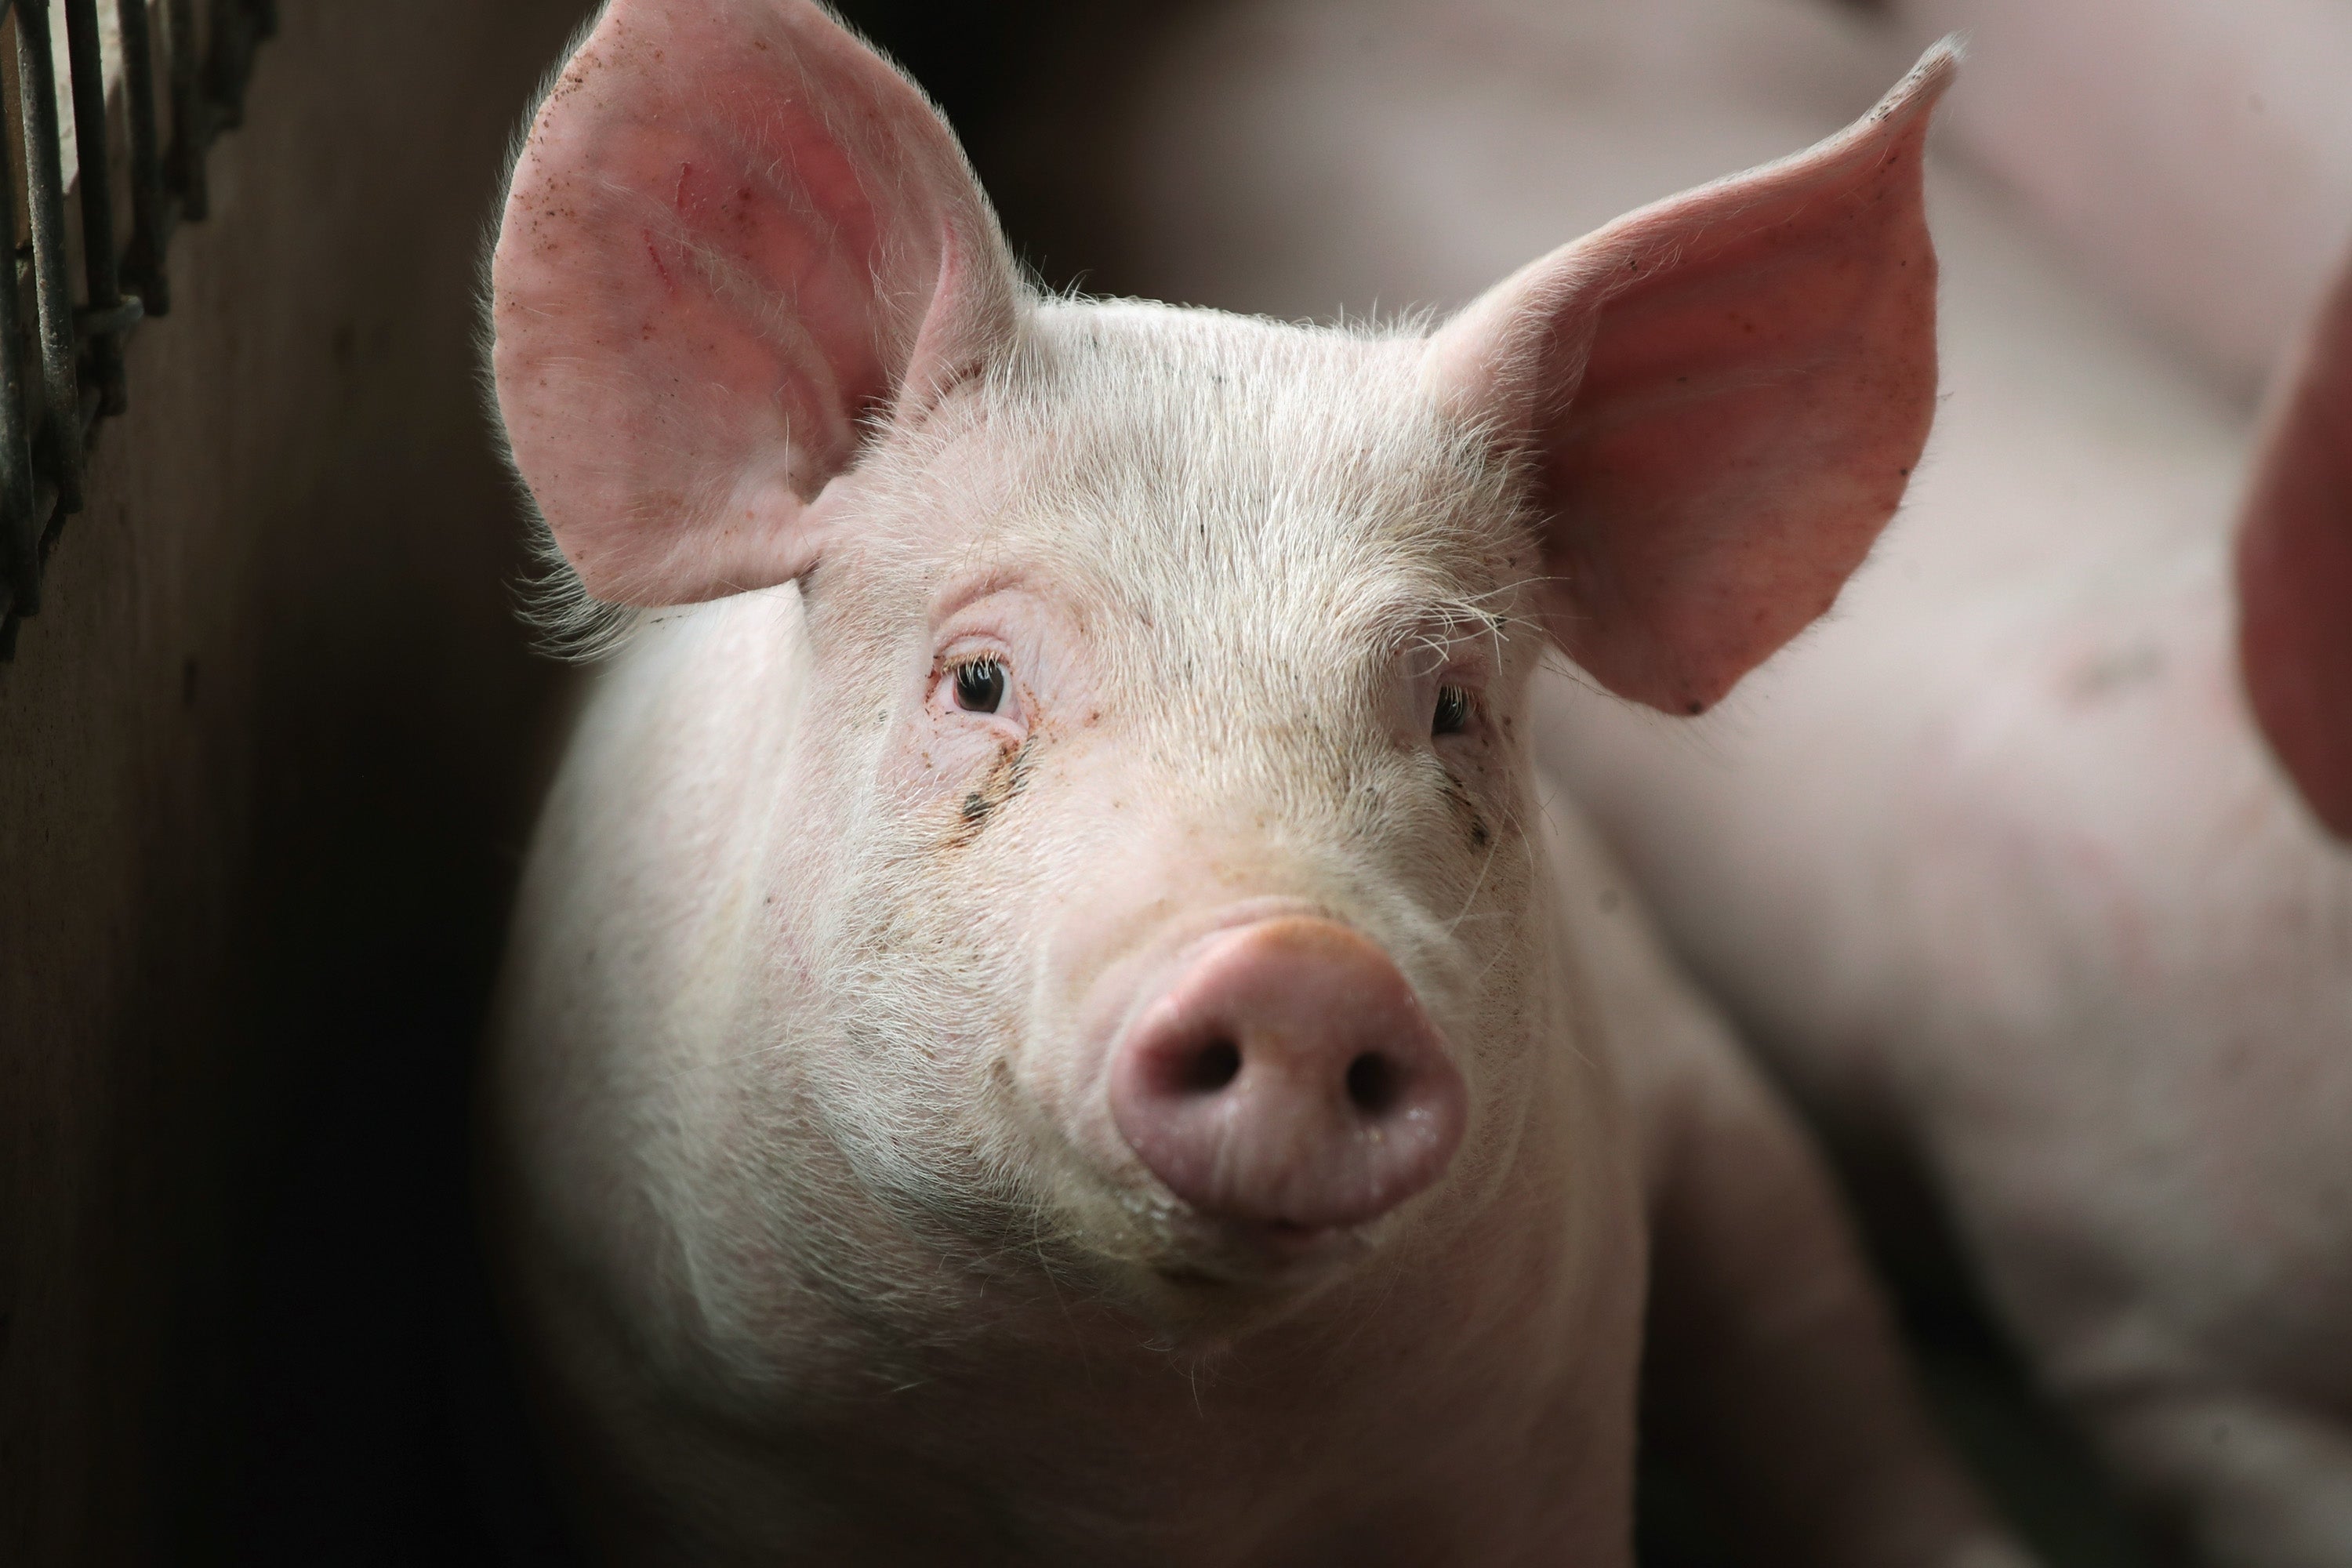 pork producer, california pig law